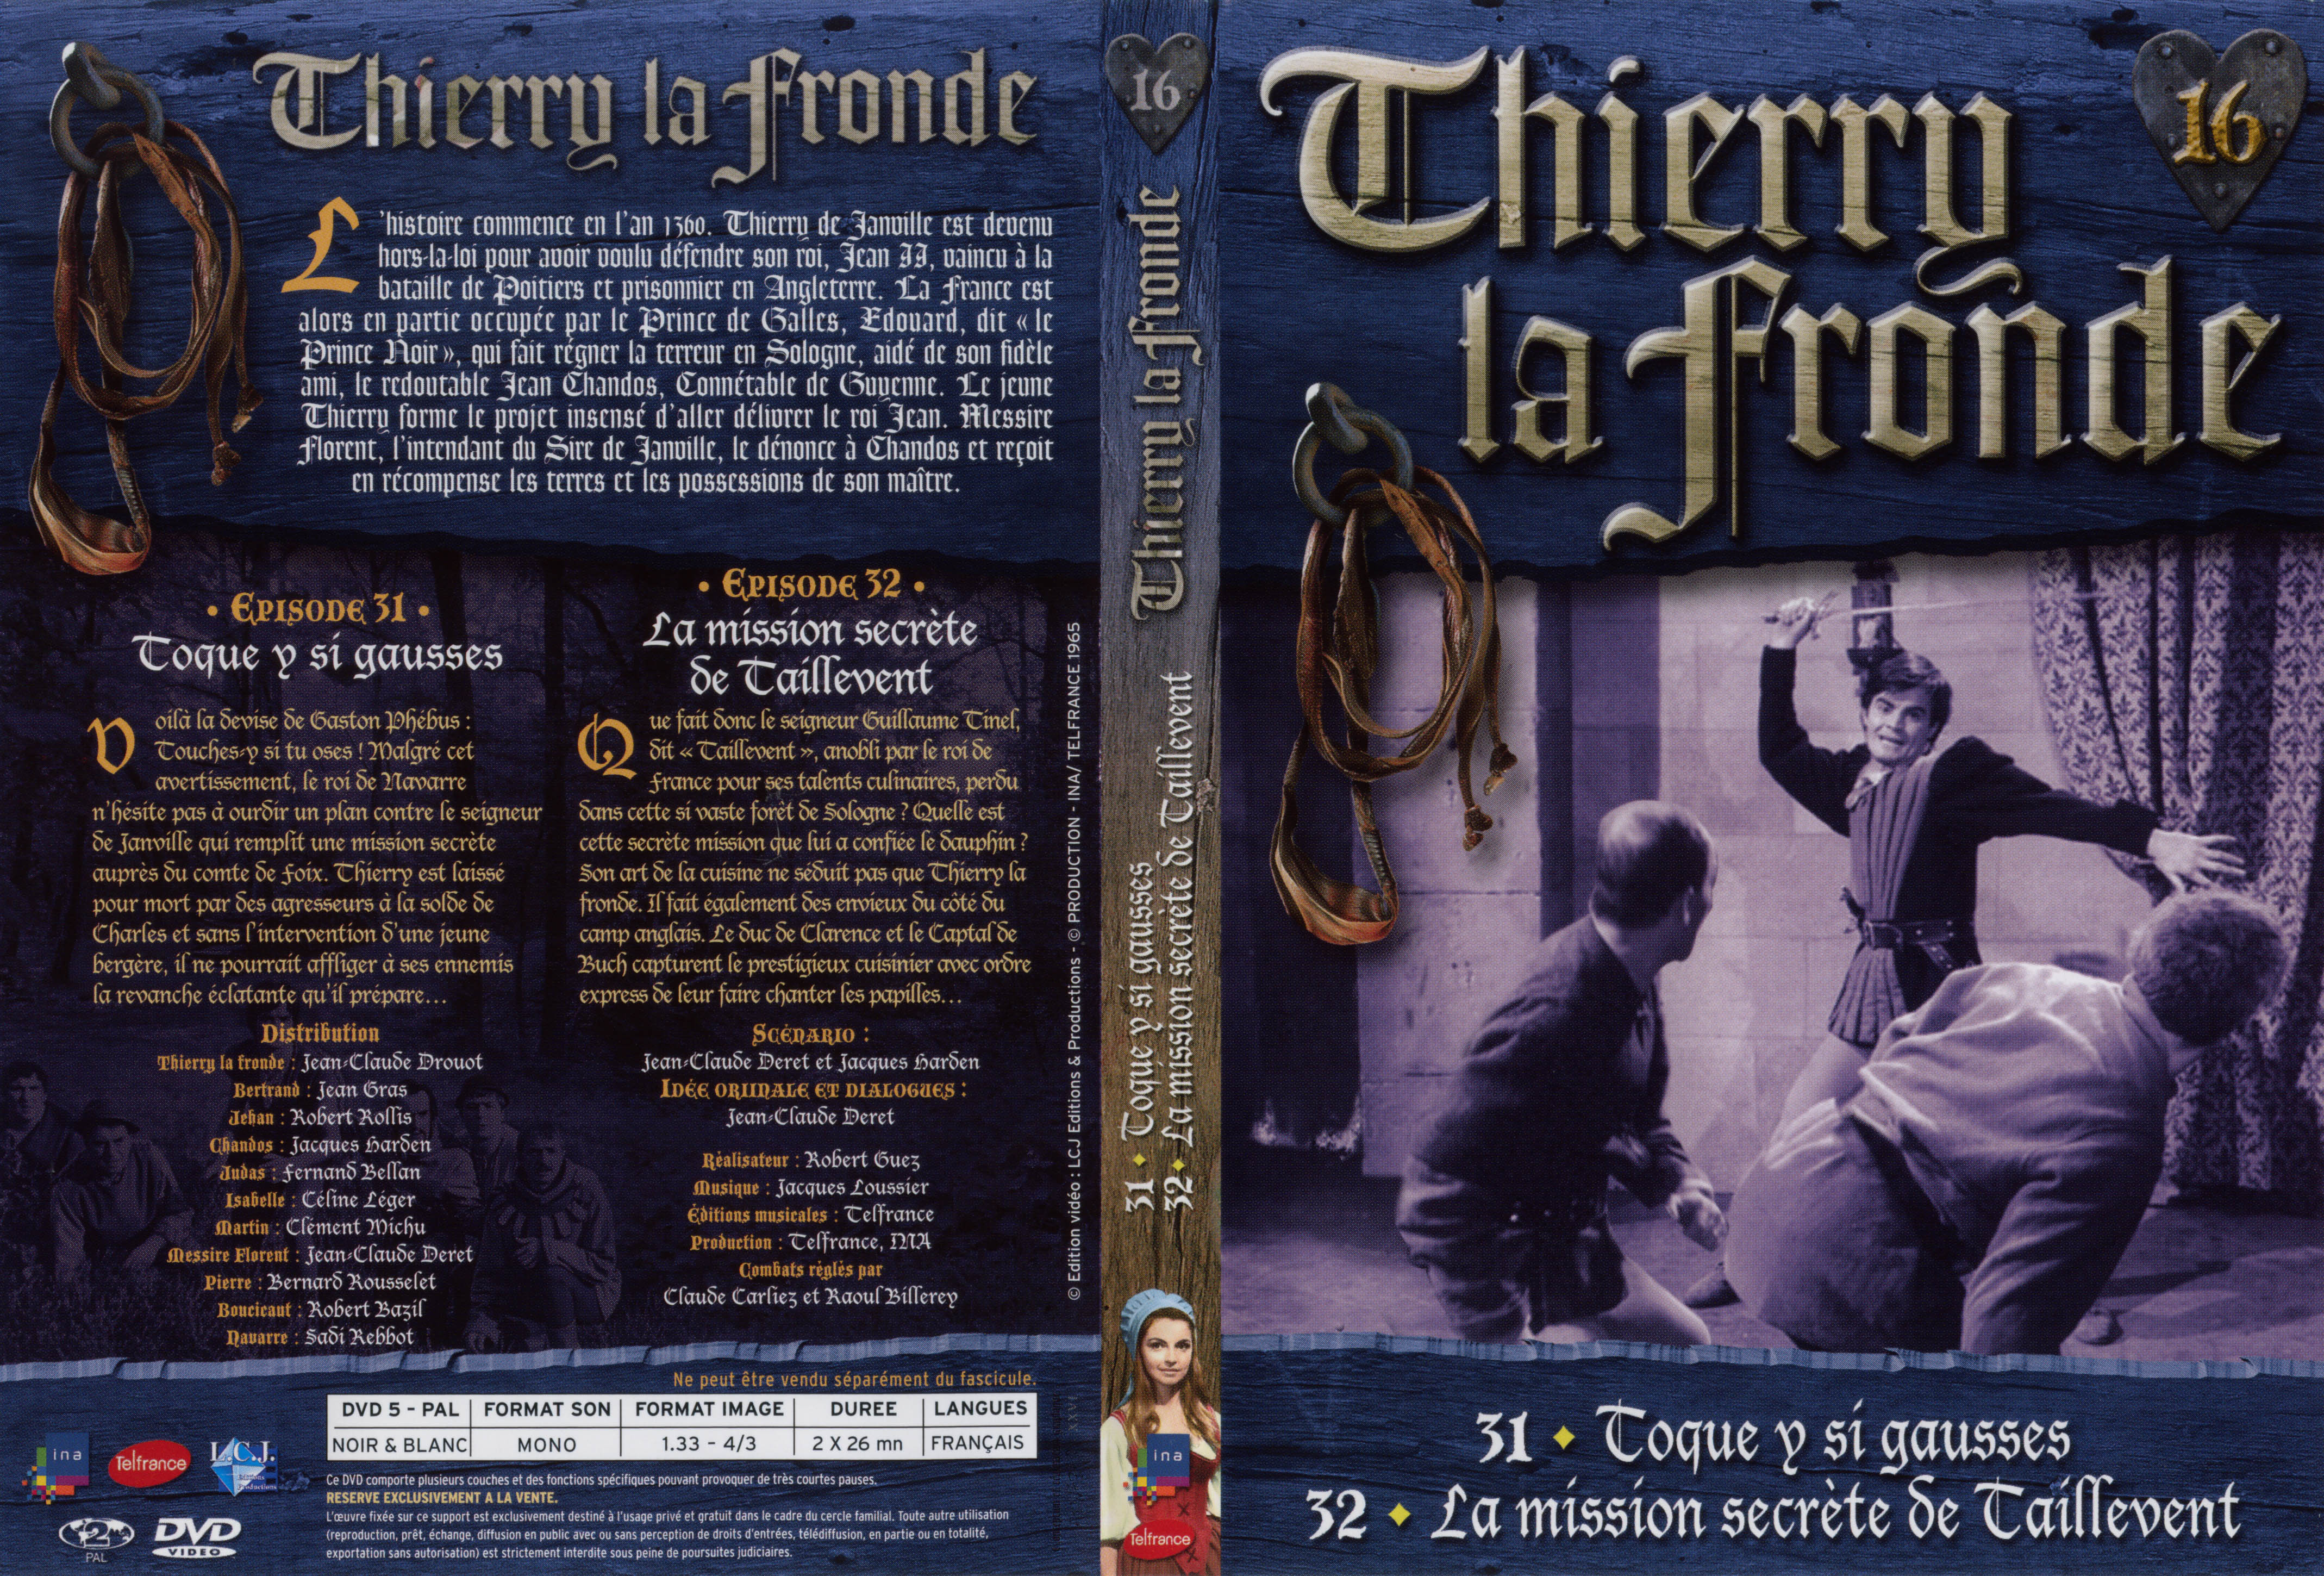 Jaquette DVD Thierry la Fronde vol 16